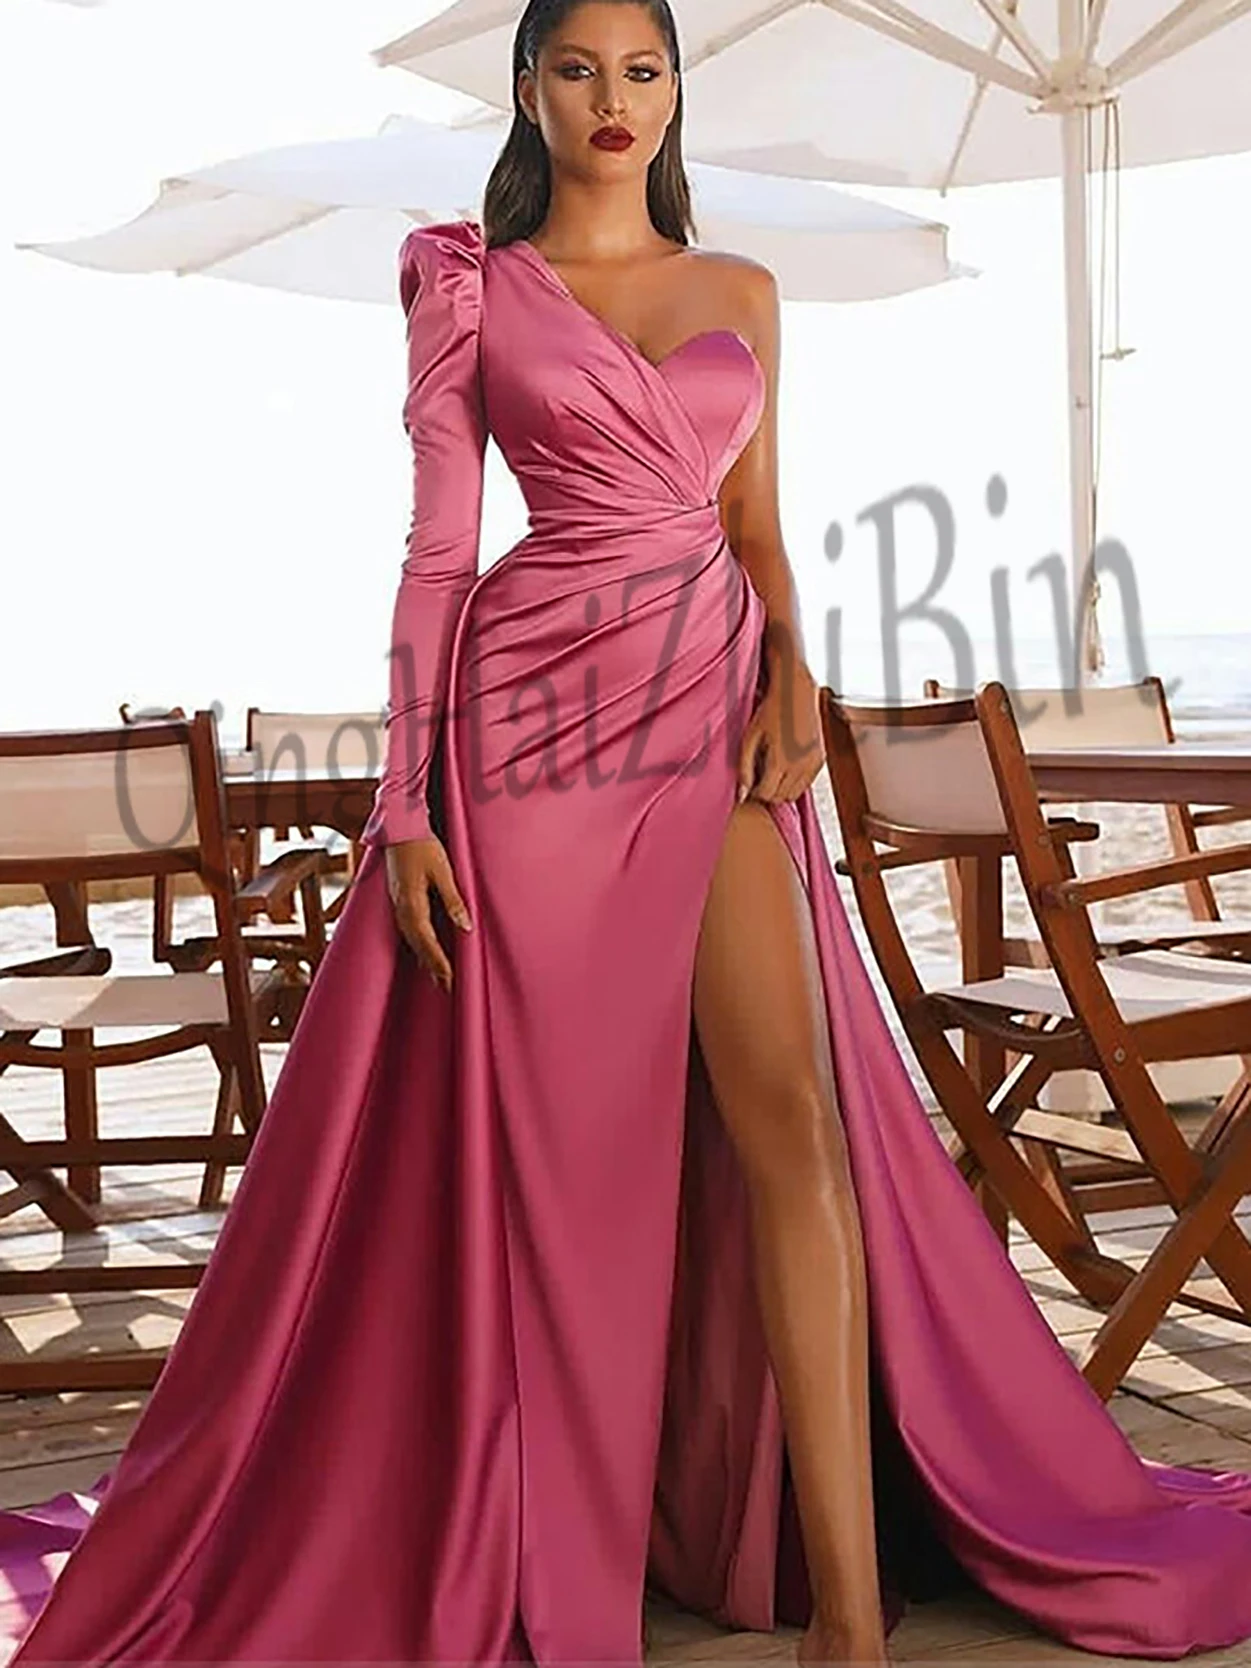 

525 ярко-розовое платье на одно плечо естественная линия этаже-Длина атласное вечернее платье для выпускного вечера Длинные свадебные Обруч...